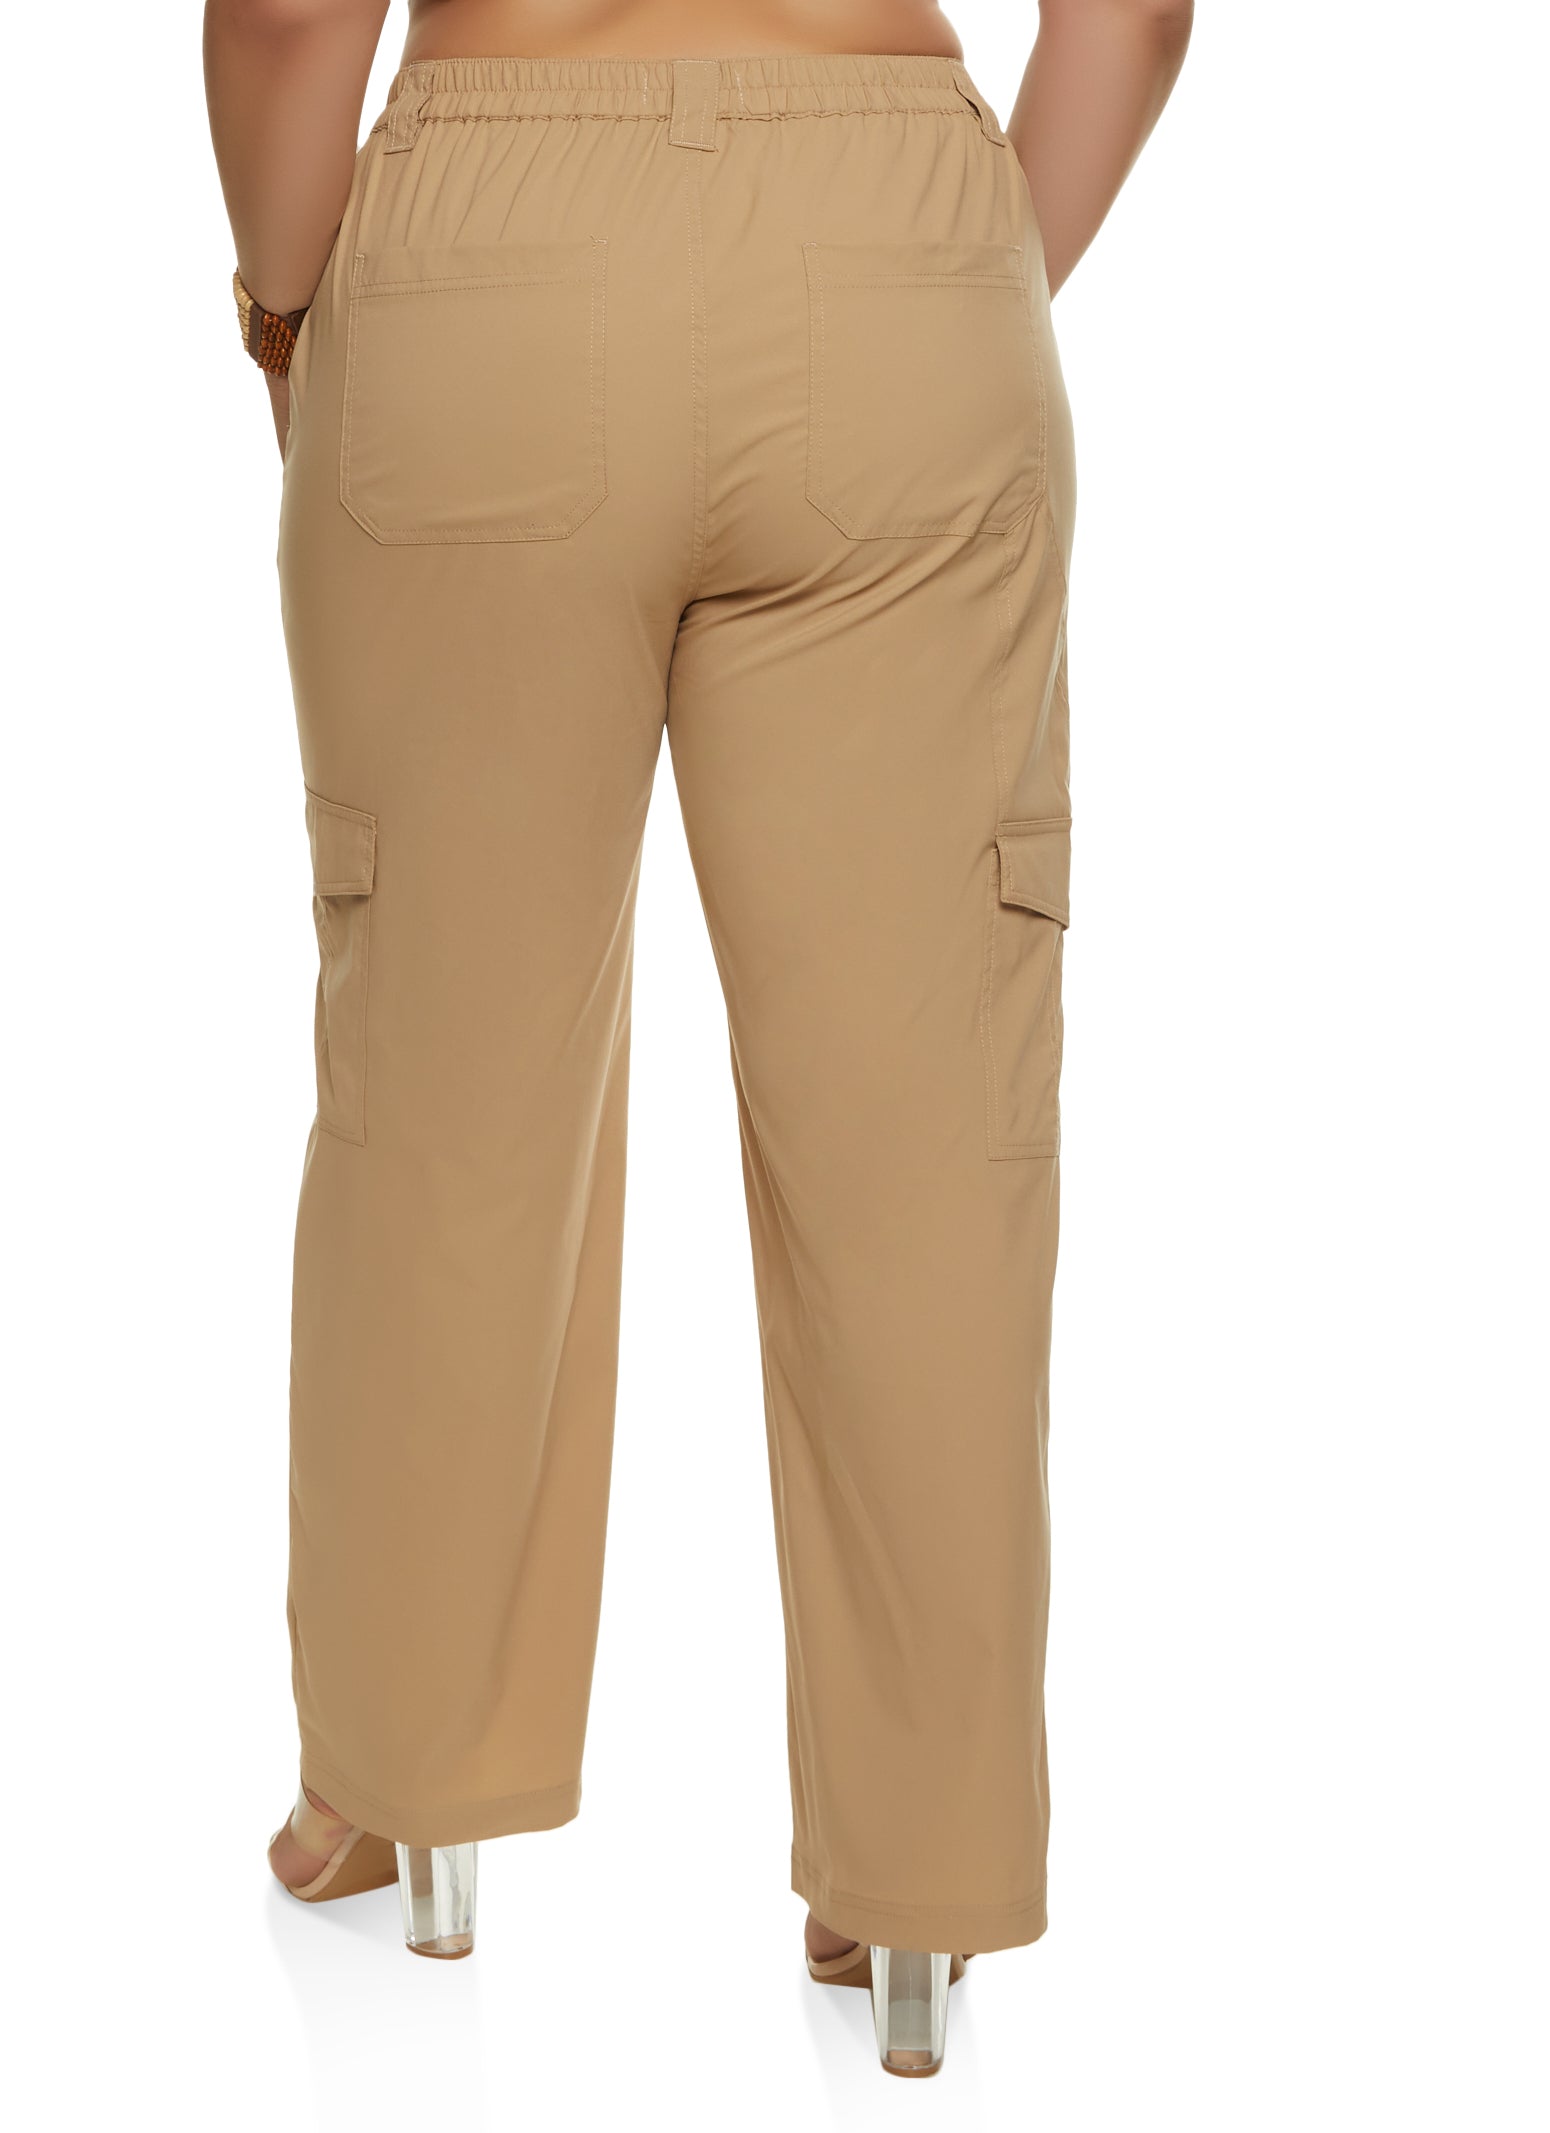 Women's Plus Size Plus Size Cargo Attitude Pant - khaki